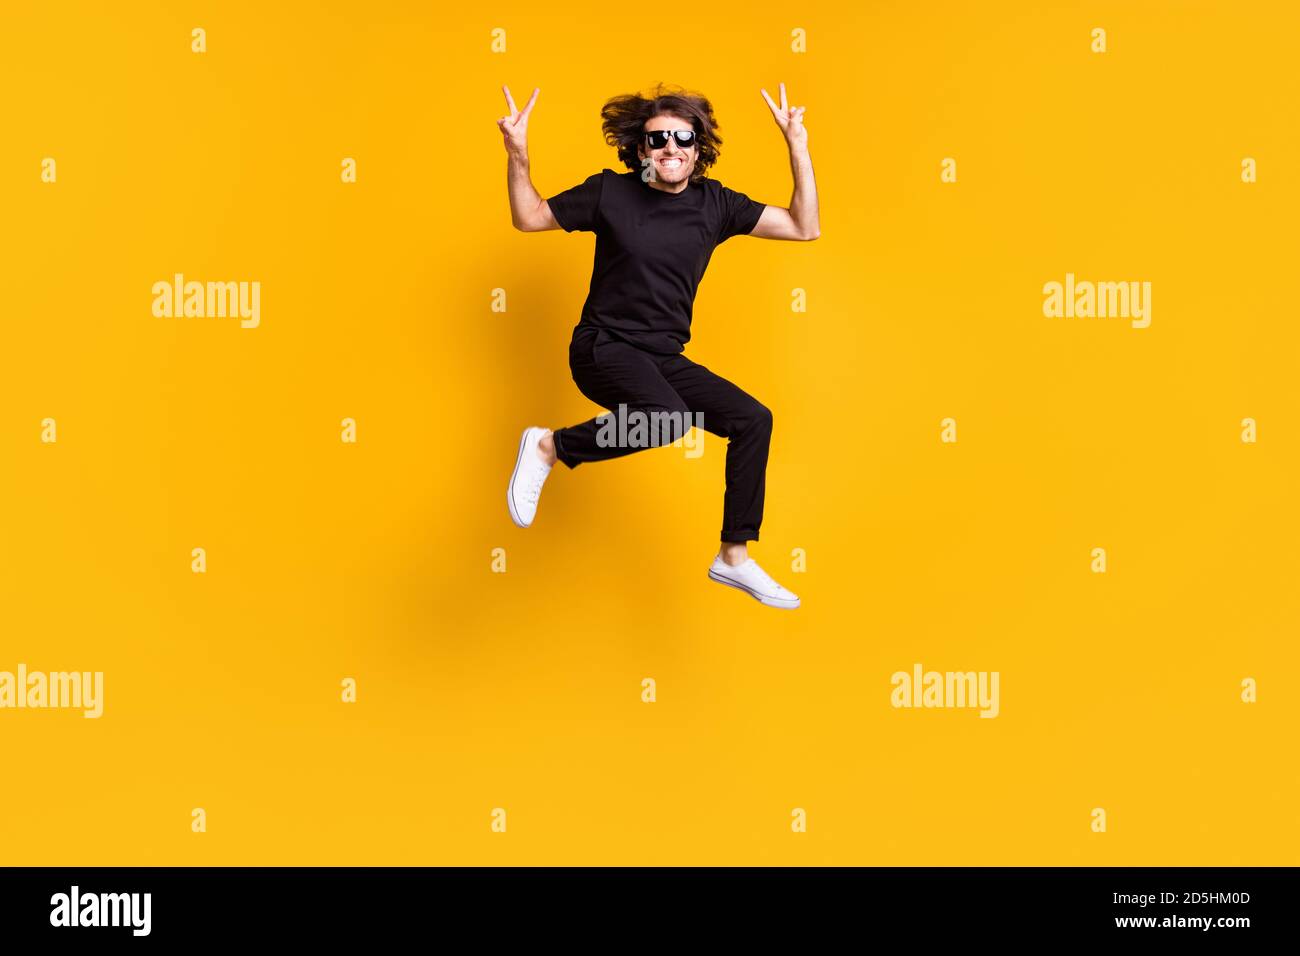 Ritratto di uomo che salta in mostra a tutta lunghezza gesto v-sign con entrambe le mani in outfit nero sunglass isolato di colore giallo brillante Foto Stock